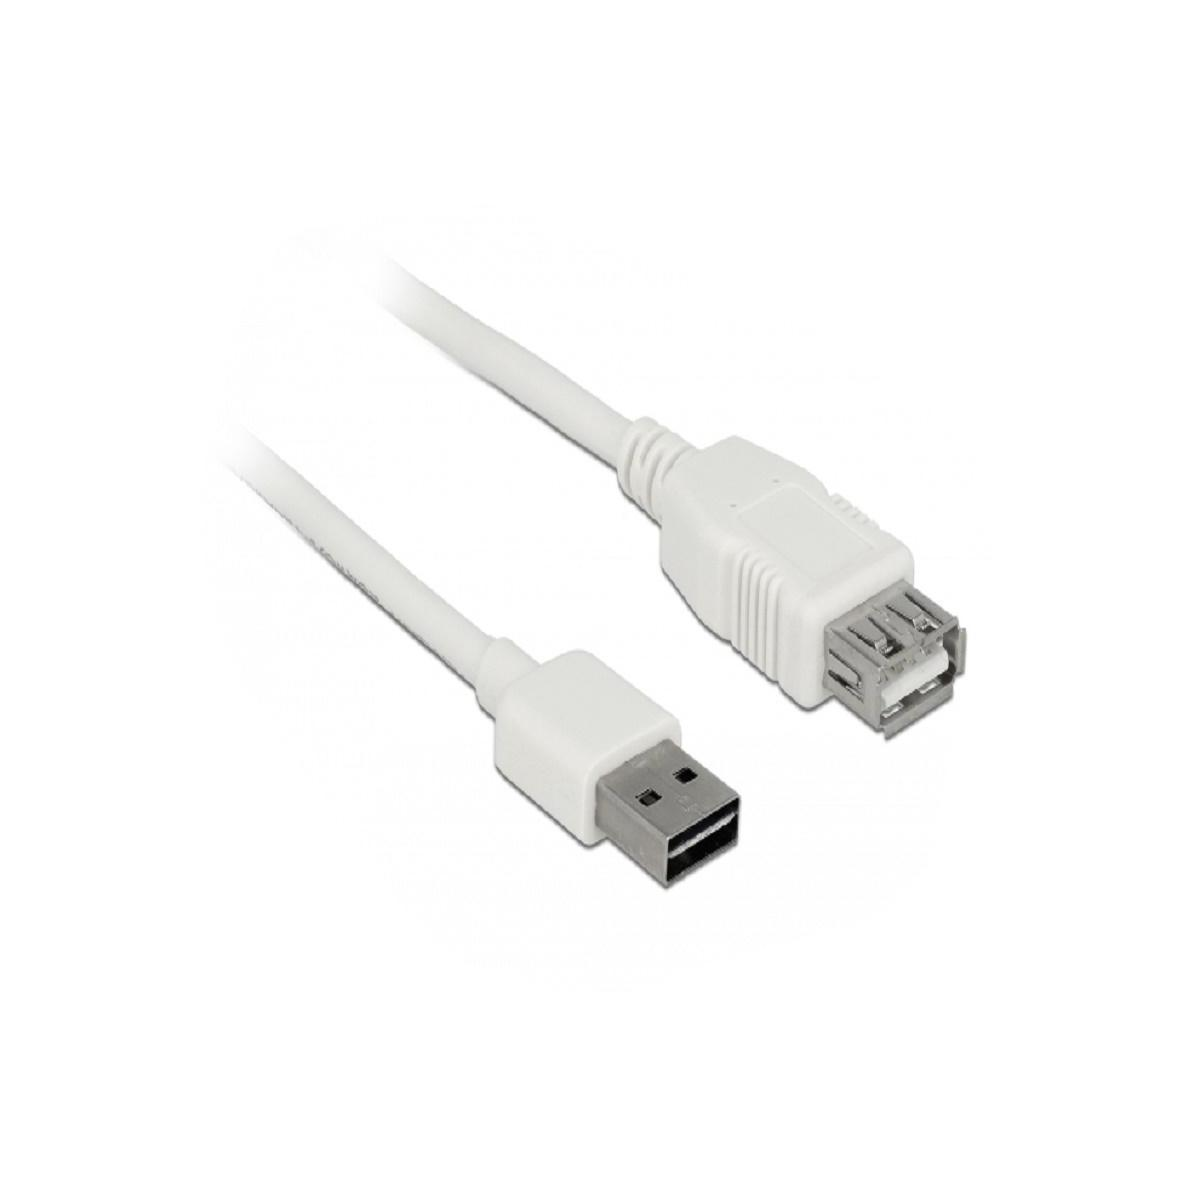 DELOCK 85200 USB Kabel, Weiß